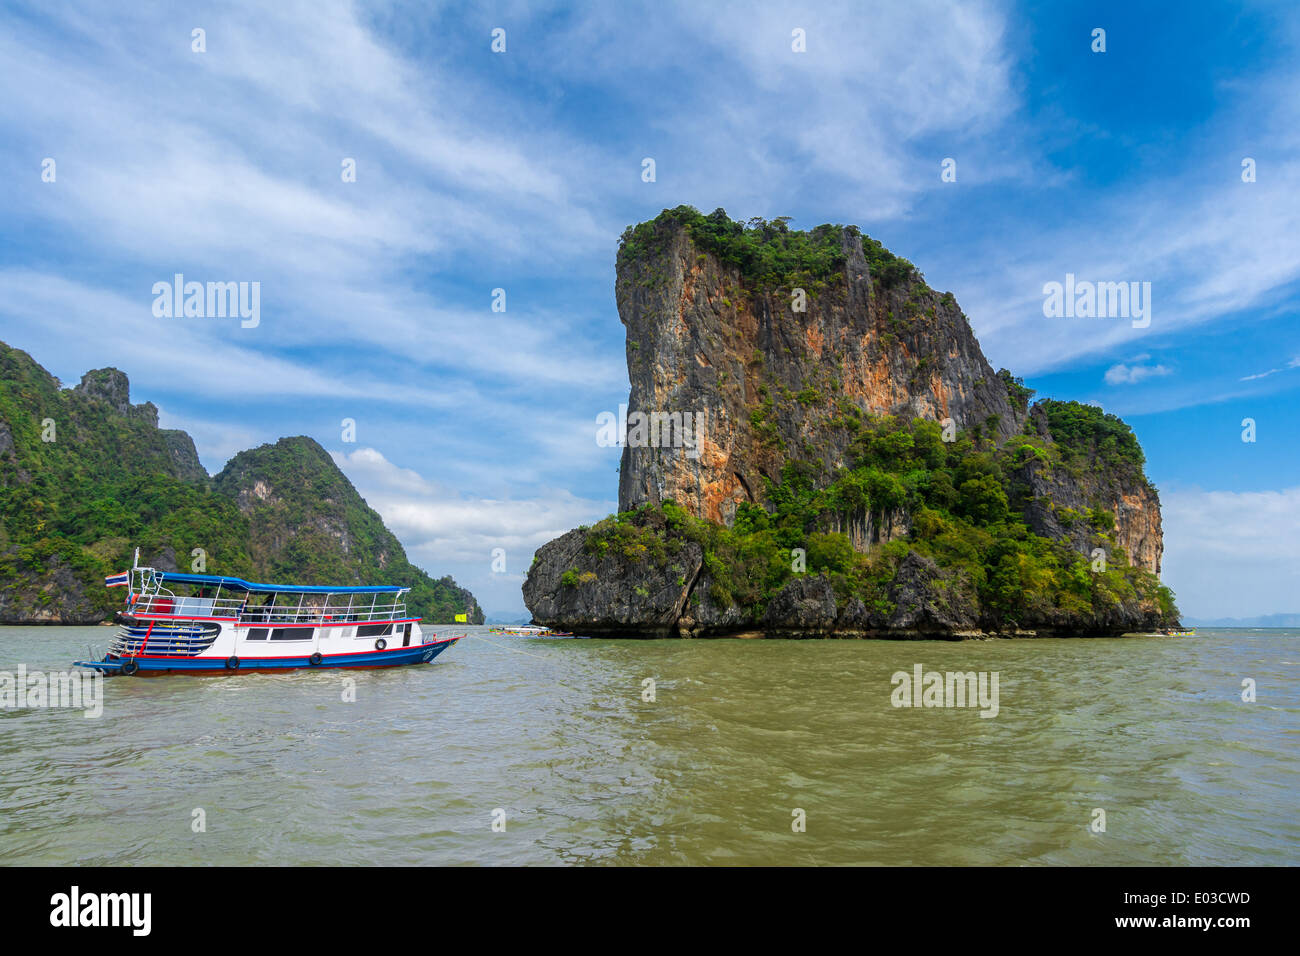 Rock Island from Phang Nga Bay, Ao Phang Nga National Park, Thailand. Stock Photo